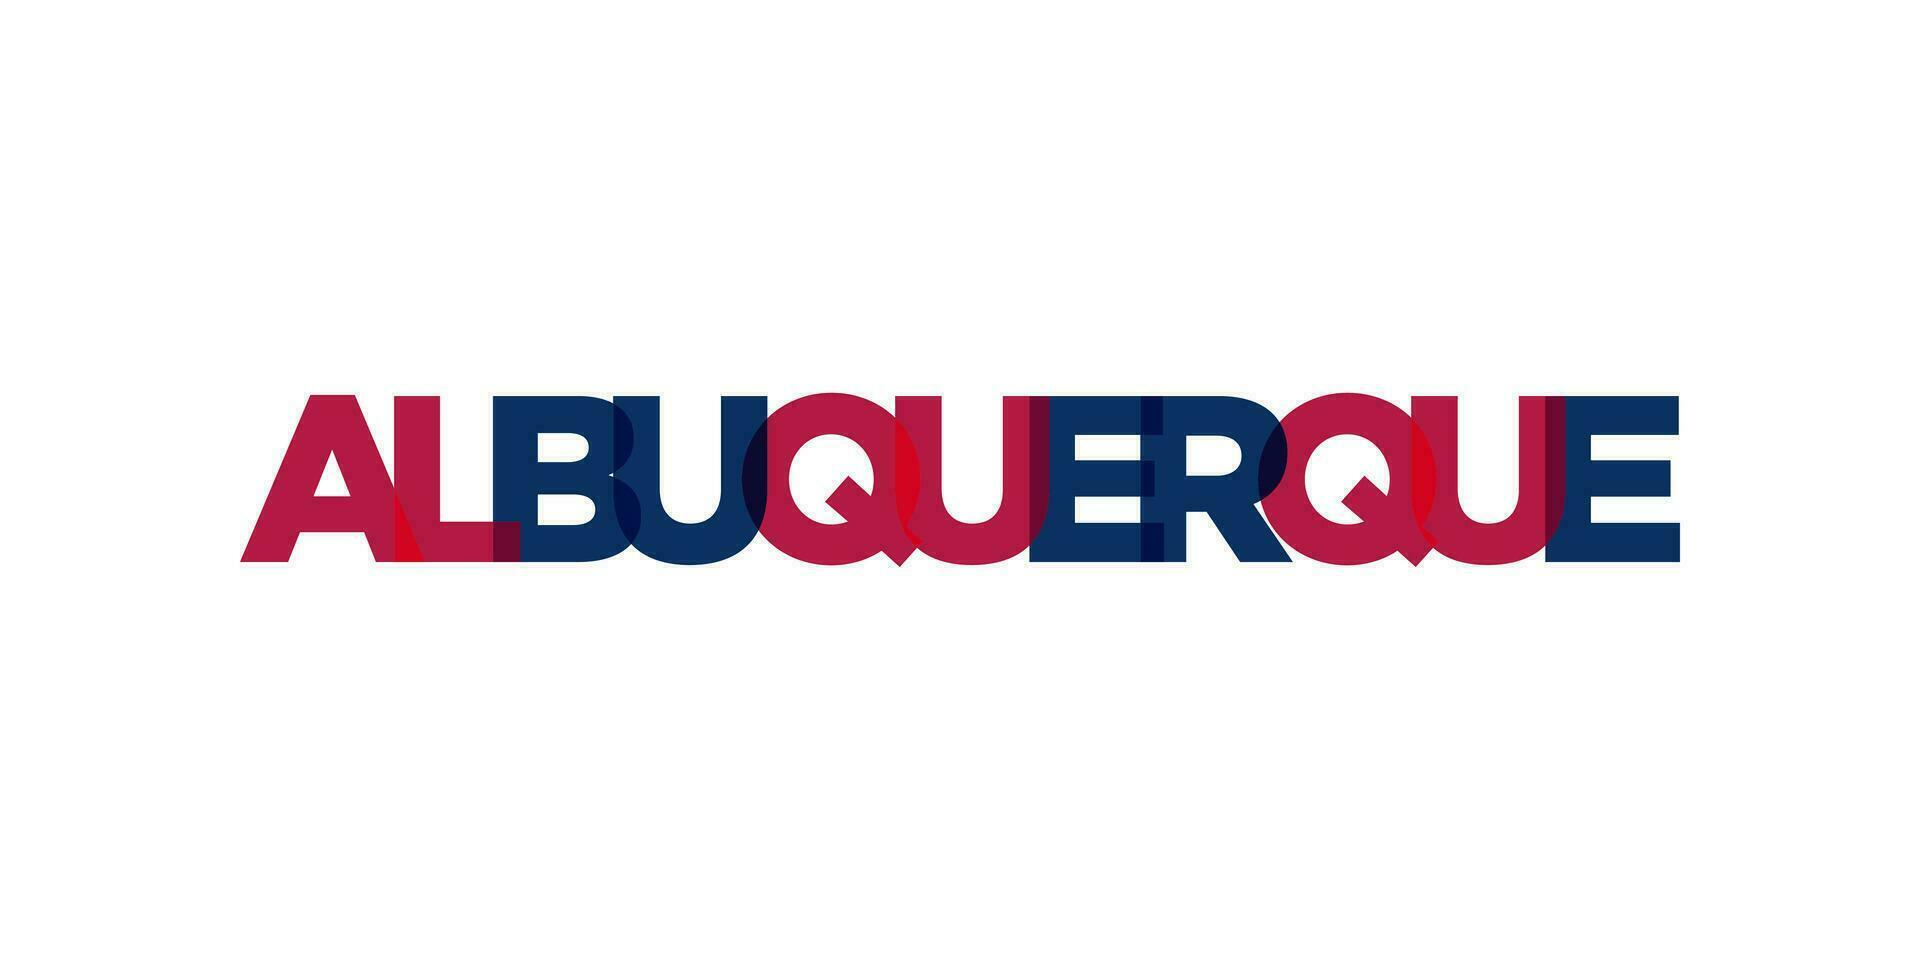 albuquerque, nieuw Mexico, Verenigde Staten van Amerika typografie leuze ontwerp. Amerika logo met grafisch stad belettering voor afdrukken en web. vector